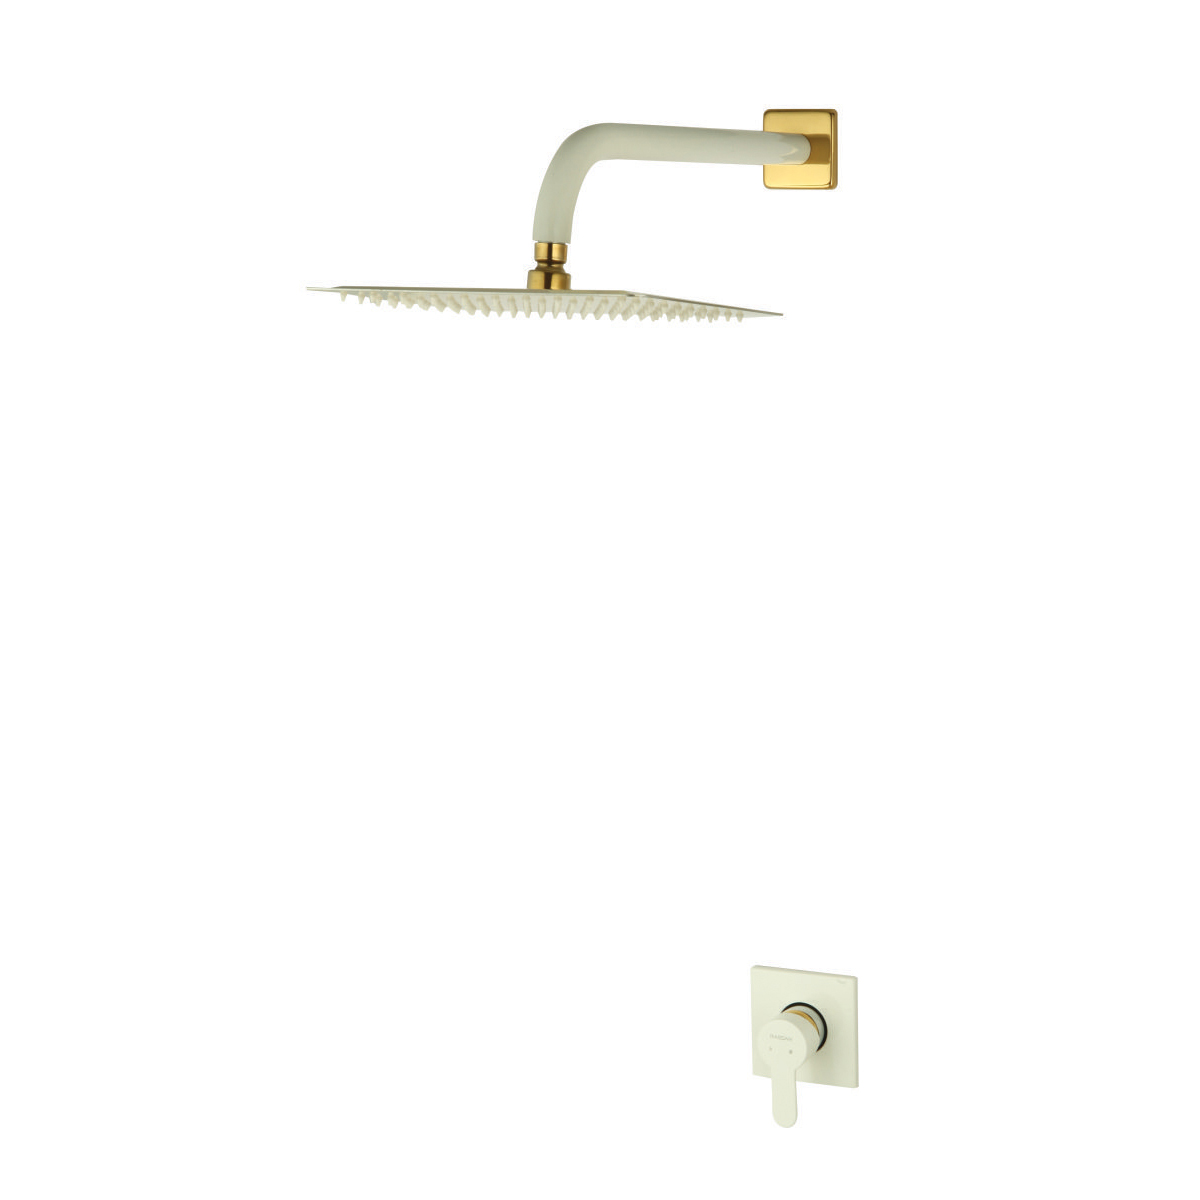 ملحقات شیر حمام توکار ویوات راسان مدل فلت کلاس (3) سفید طلایی